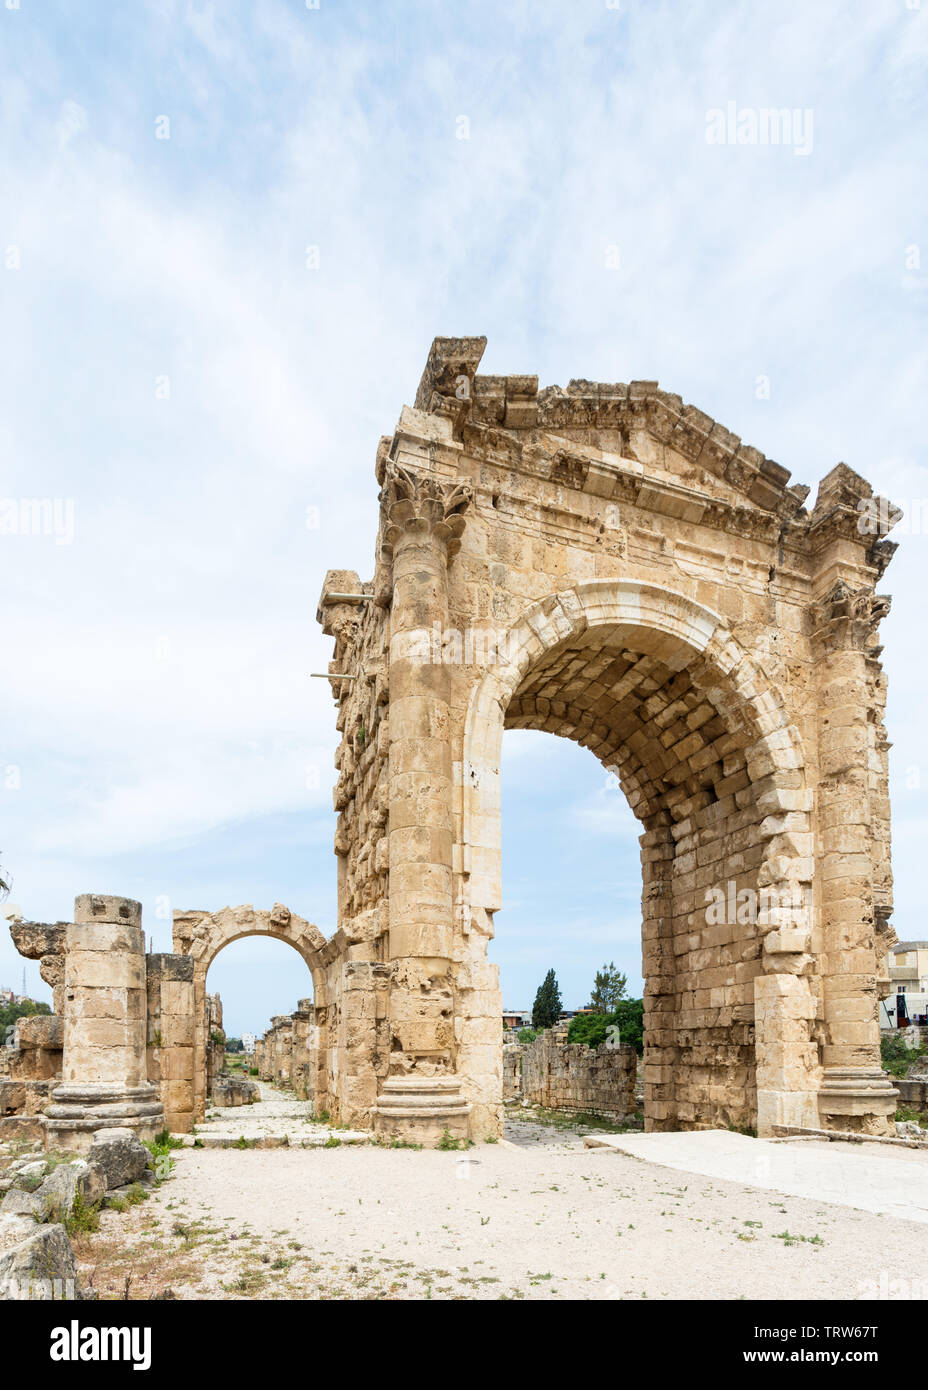 Arco di Trionfo di Adriano, al Bass sito archeologico, pneumatico, Libano Foto Stock